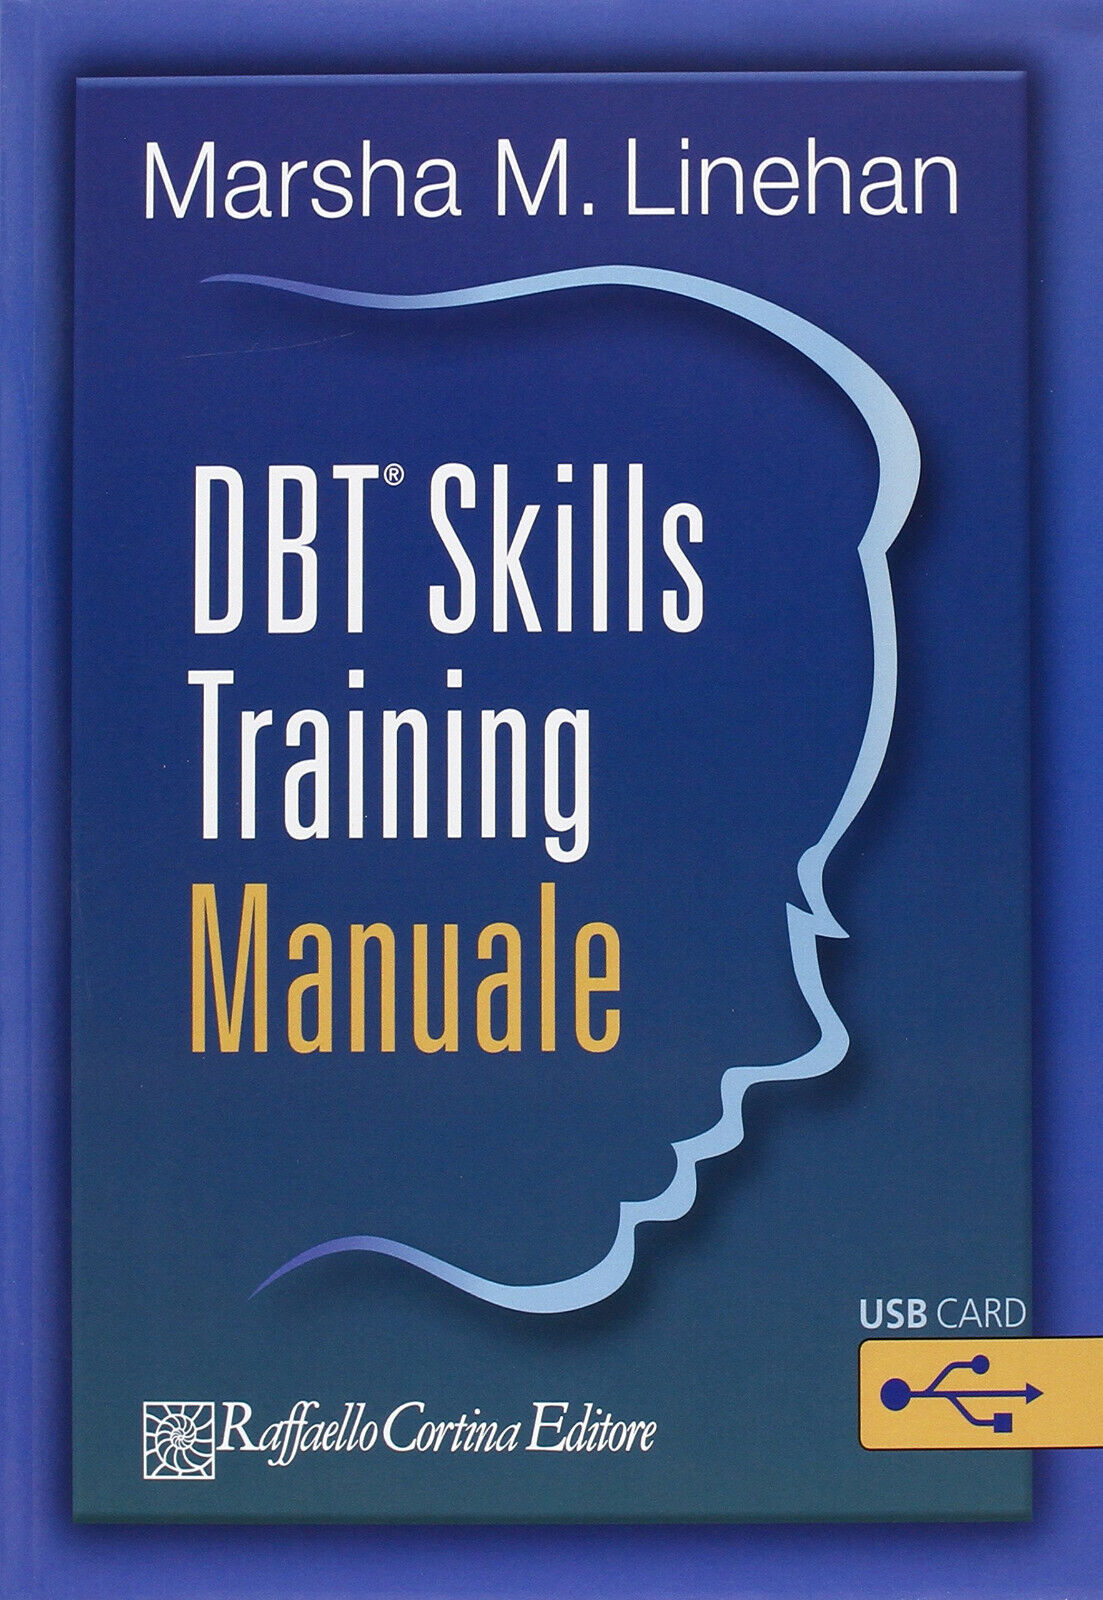 DBT Skills Training - Marsha M. Linehan - Cortina Raffaello, 2015